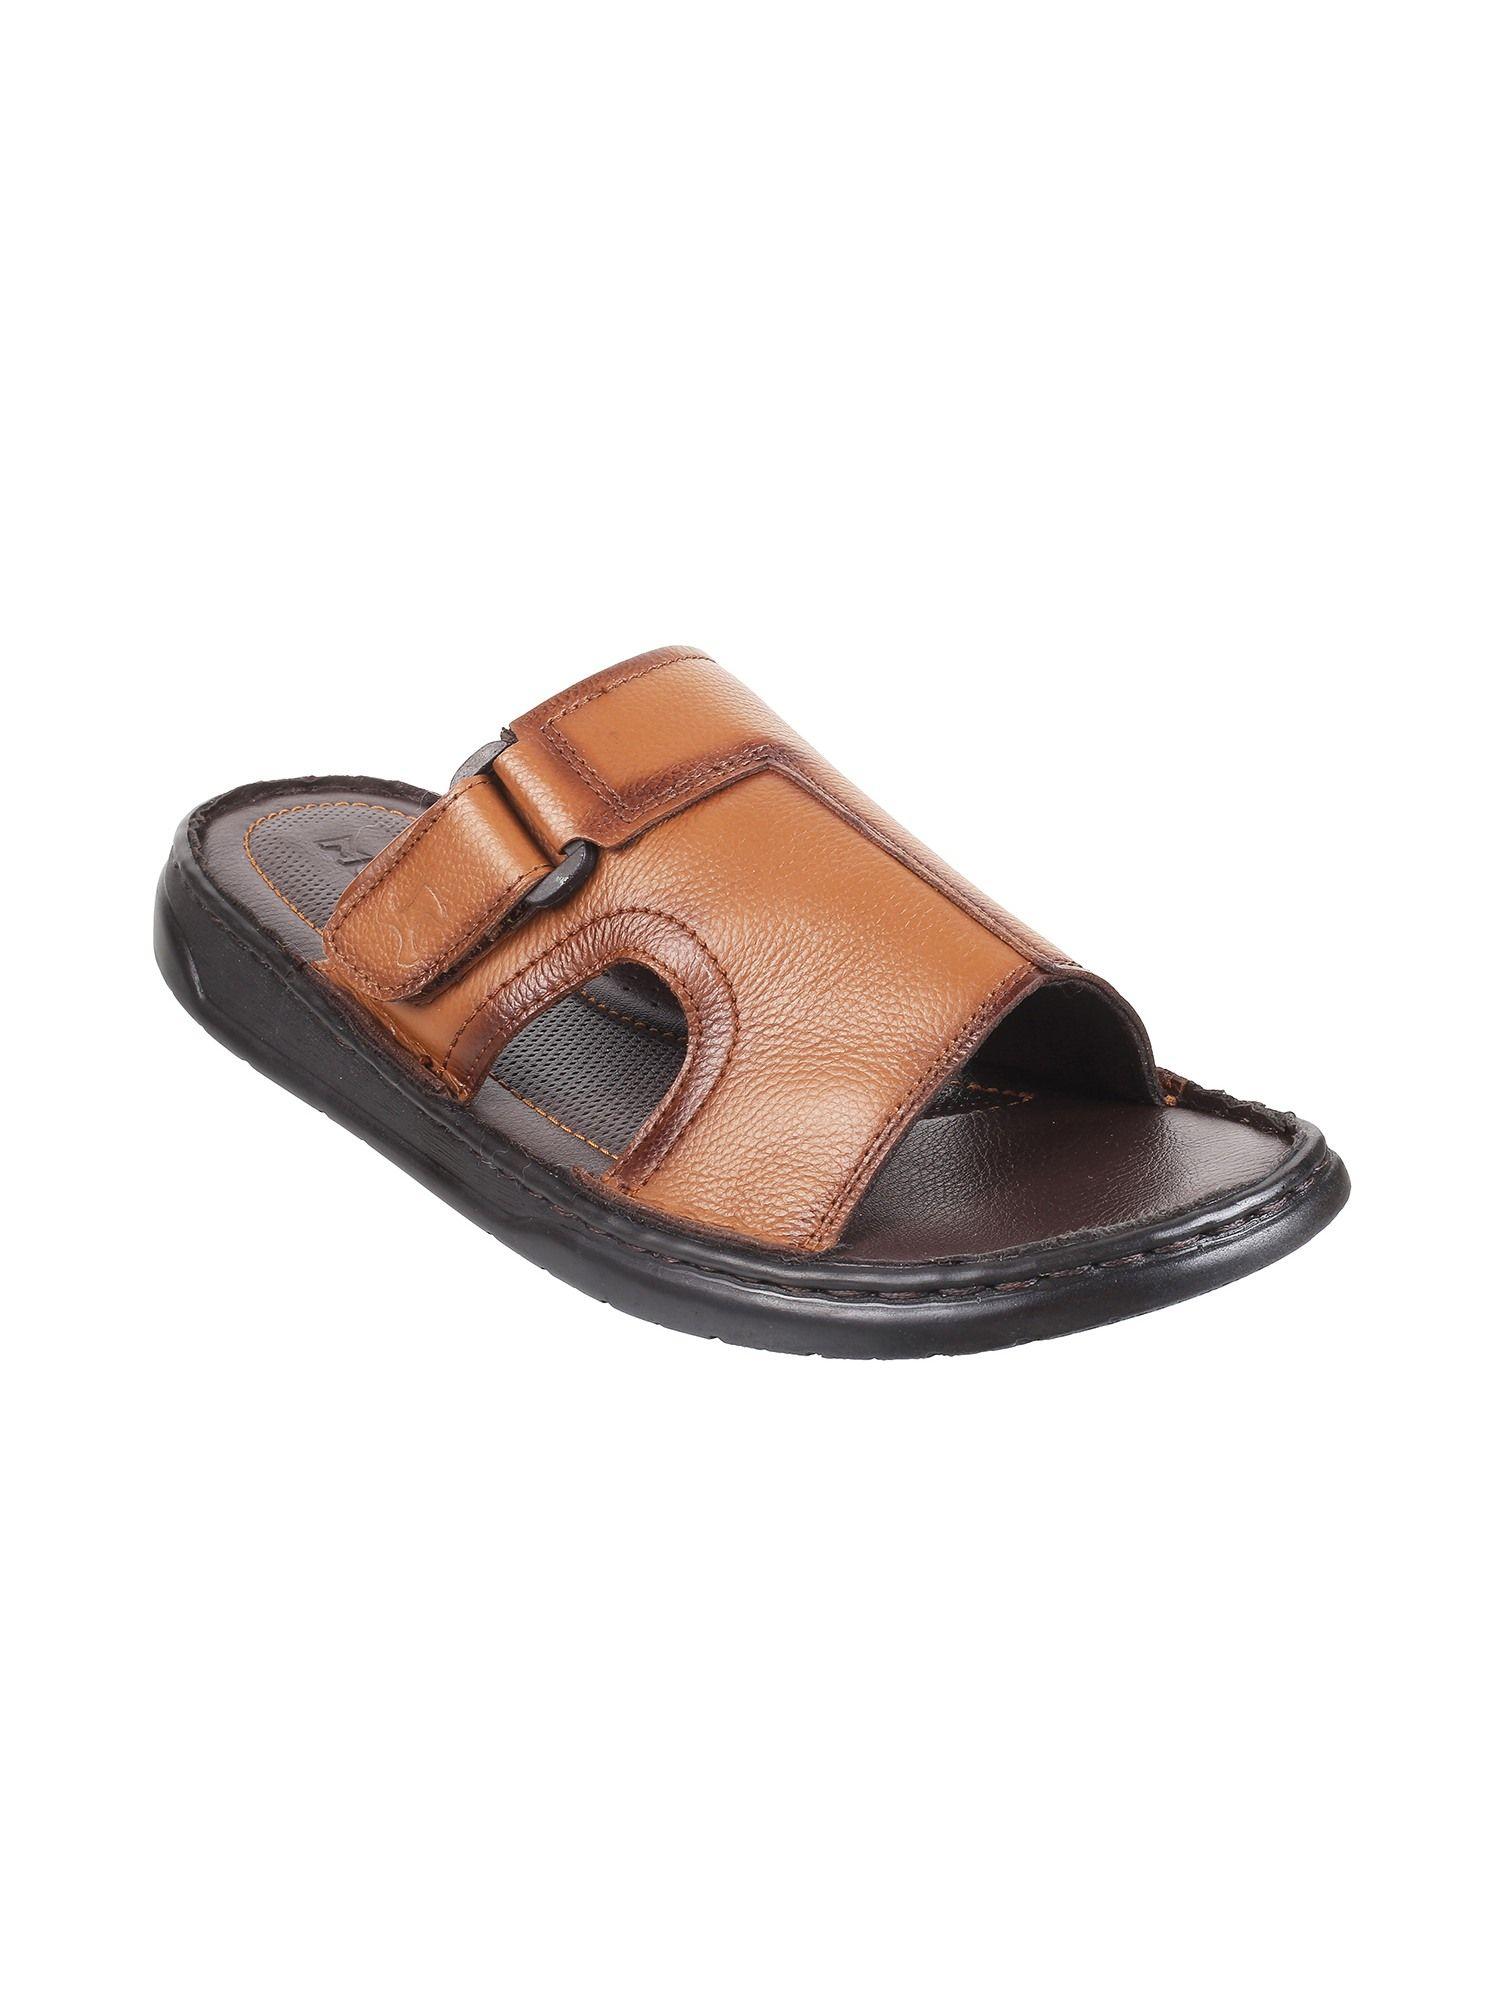 mens-tan-flat-chappalsmochi-men-tan-leather-sandals